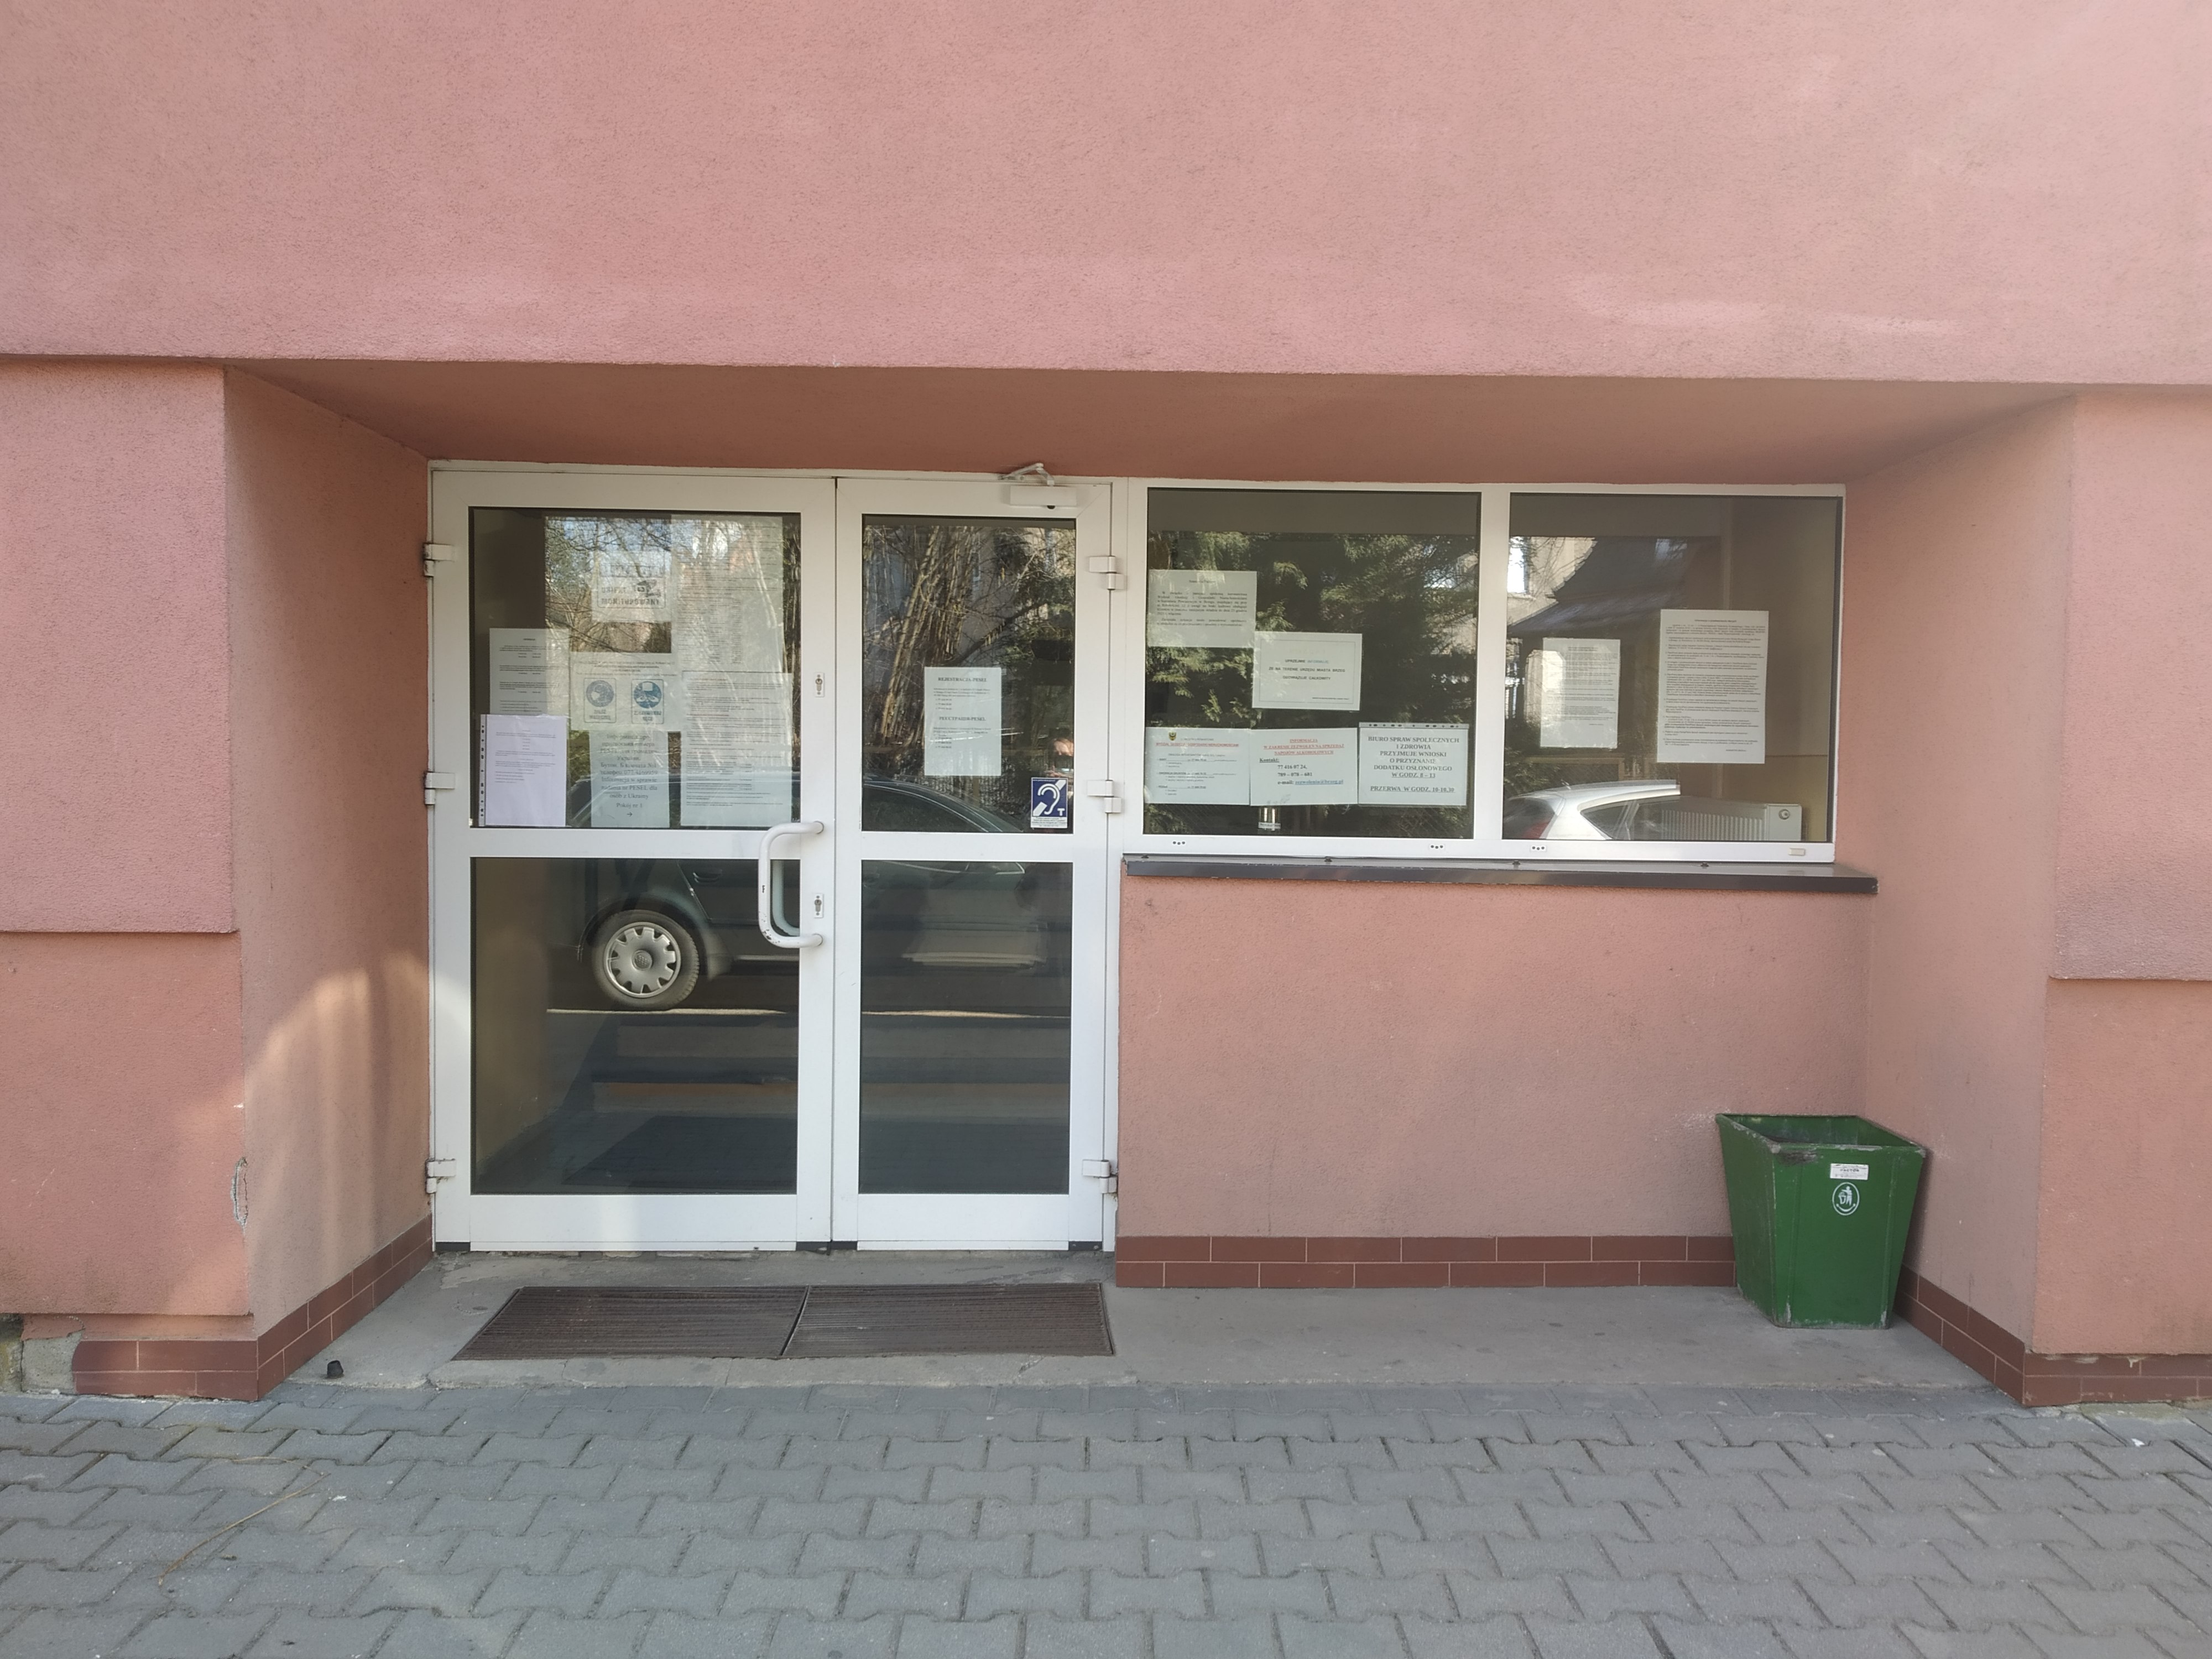 Zdjęcie wejścia do budynku B.jpg (1.46 MB)